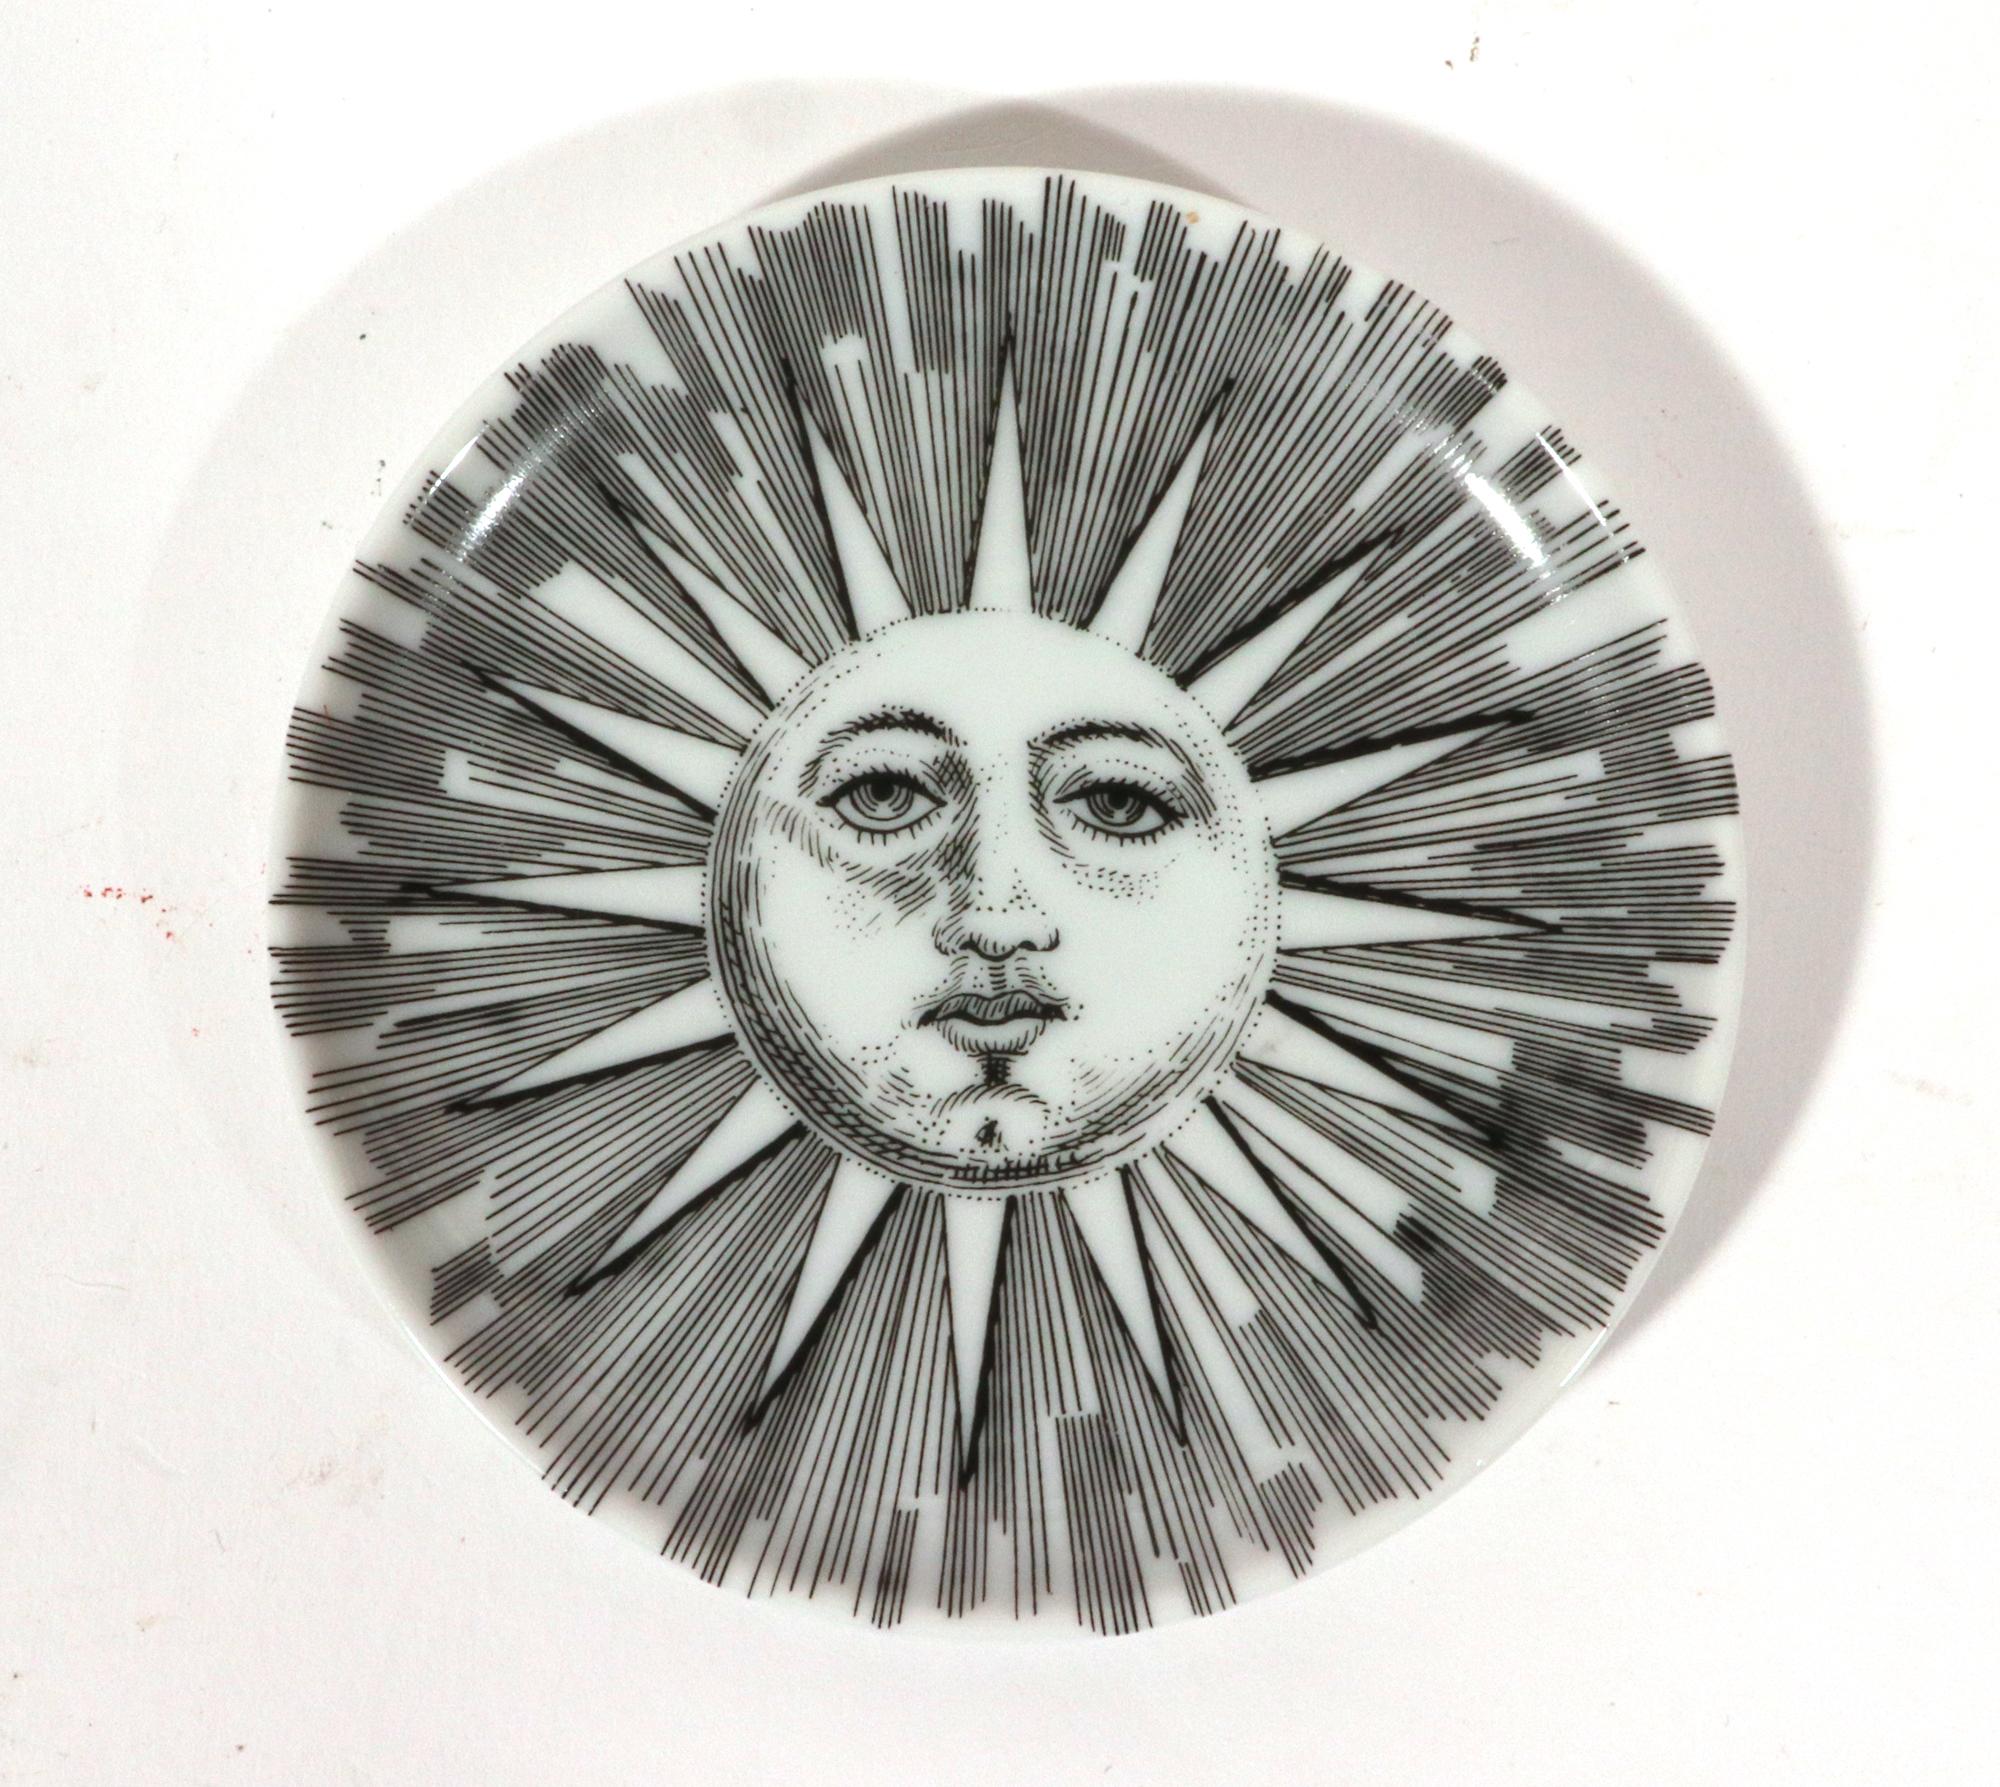 Soli E Lune Sun and Moon Pattern Ceramic Coasters by  Piero Fornasetti For Sale 3